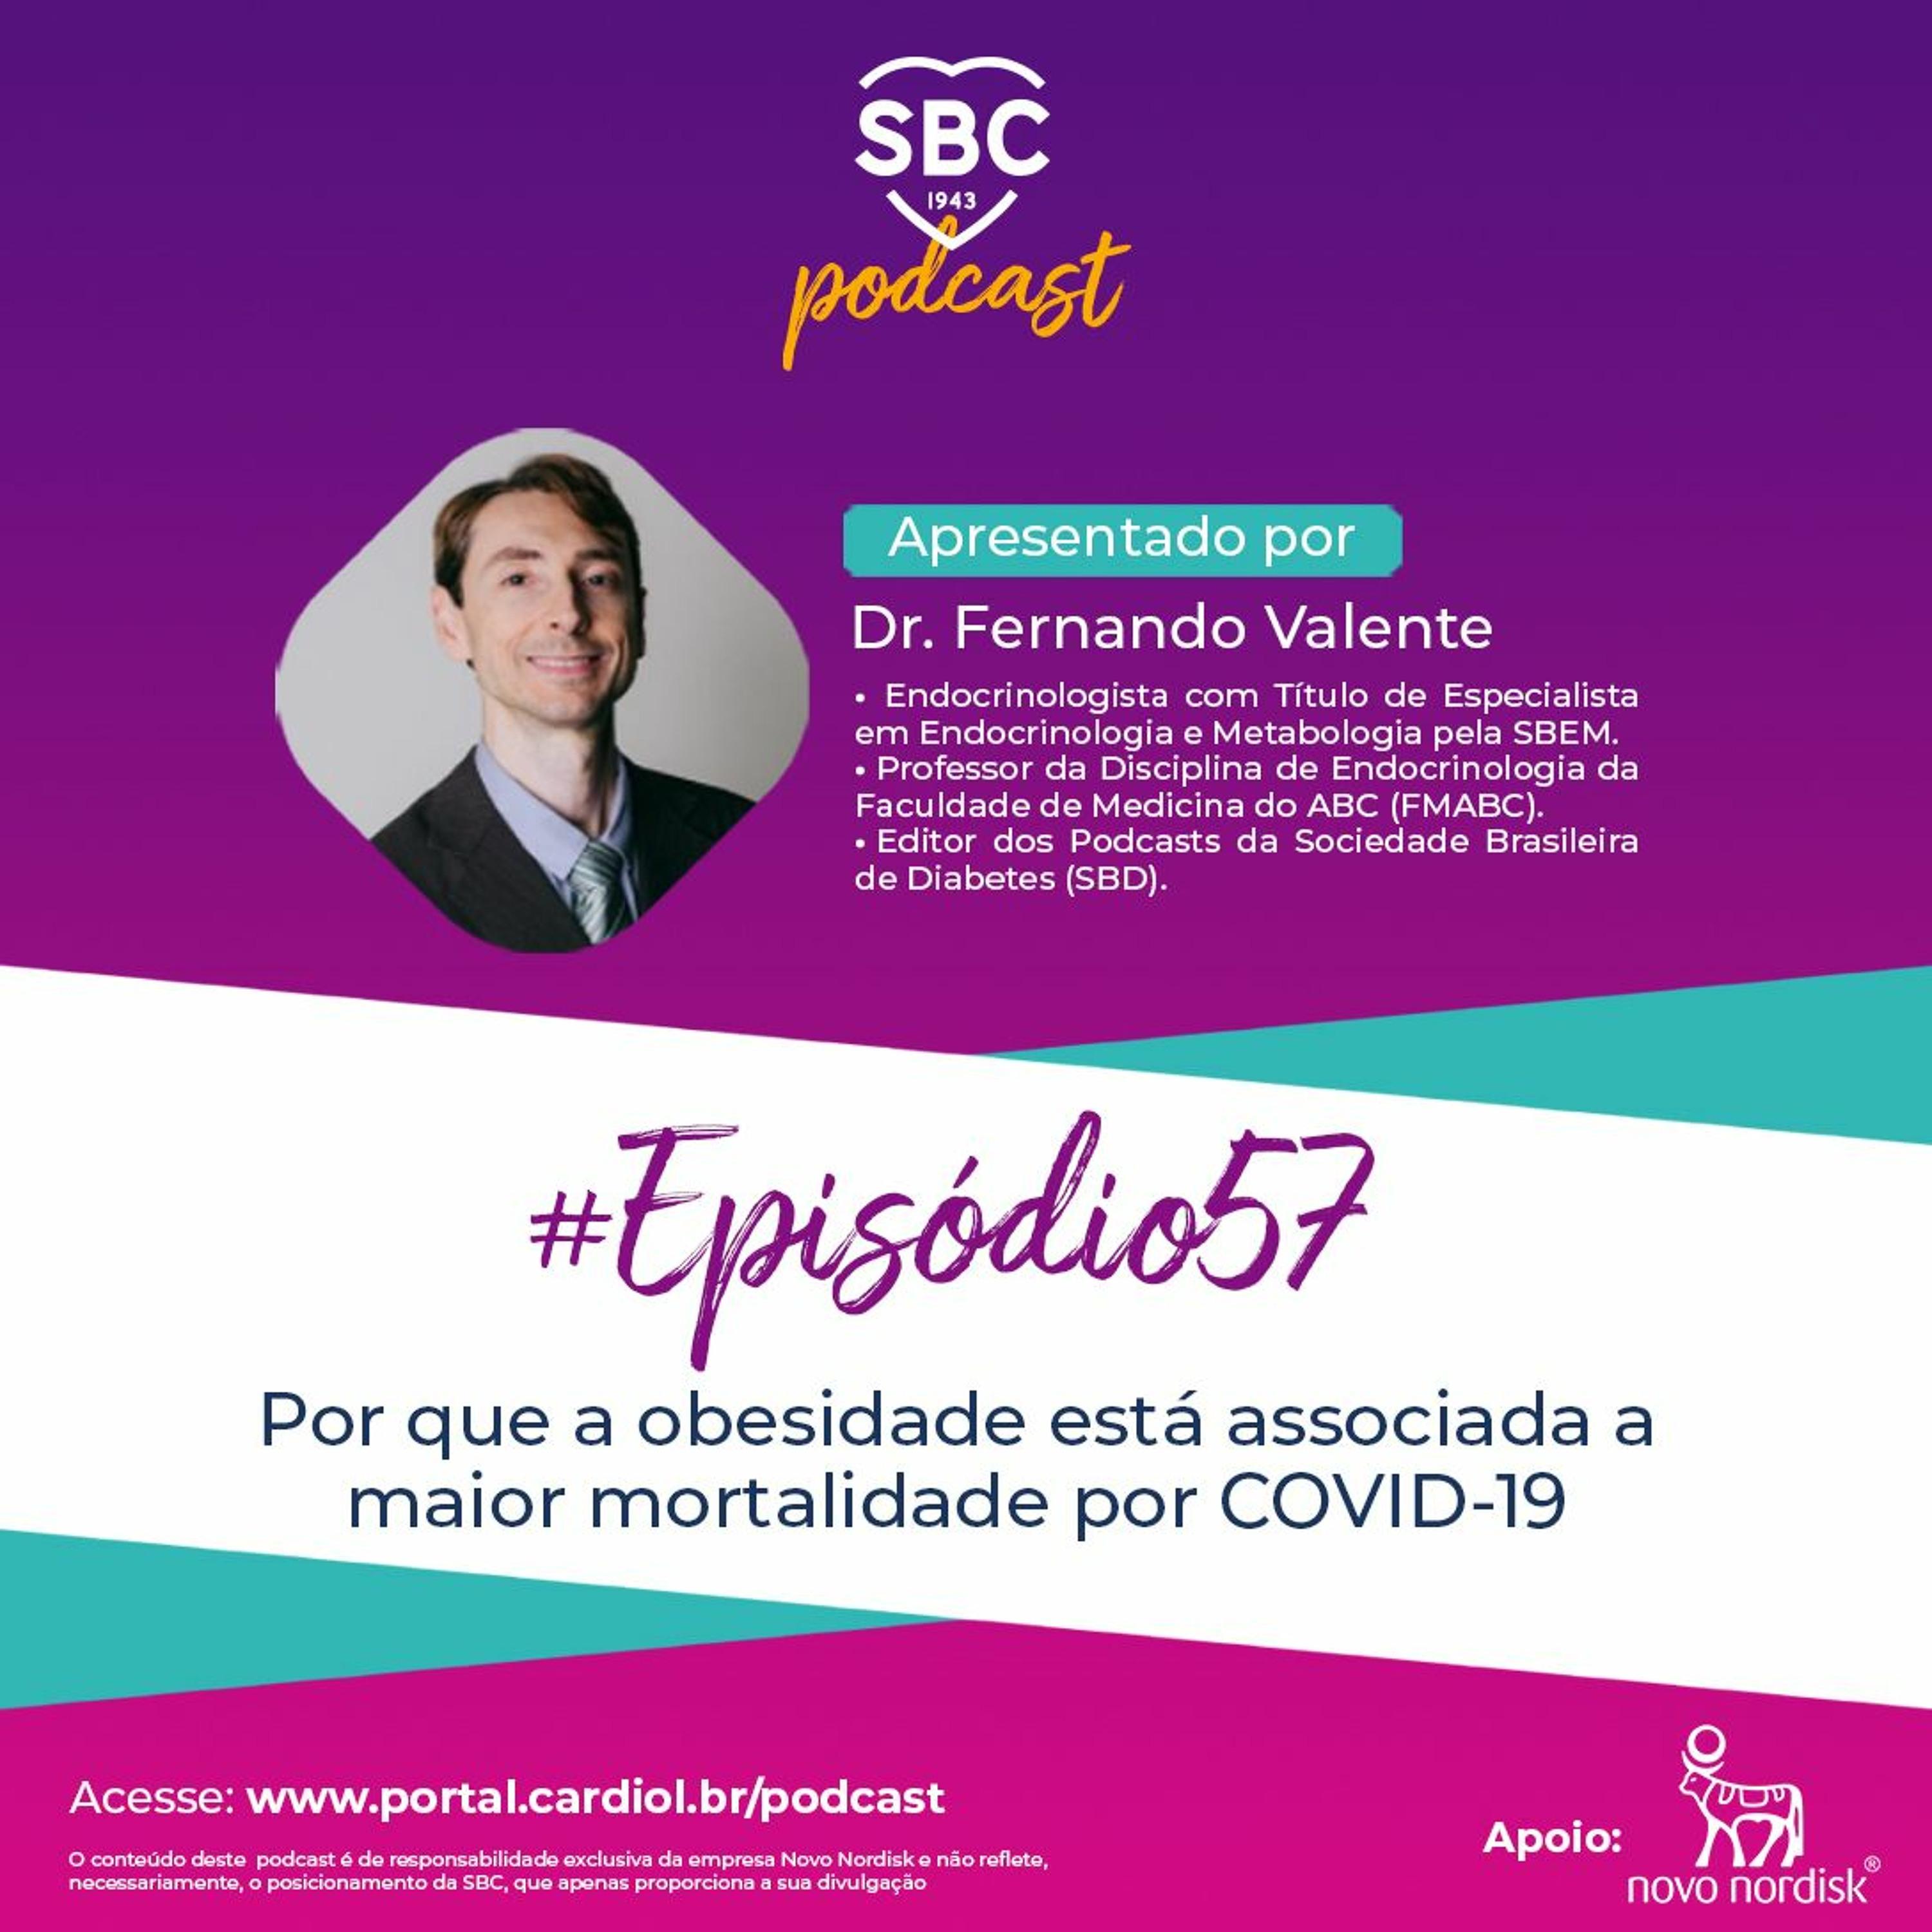 Neste episódio, o Dr. Fernando Valente abordará o Por que a obesidade está associada a maior mortalidade por COVID-19.